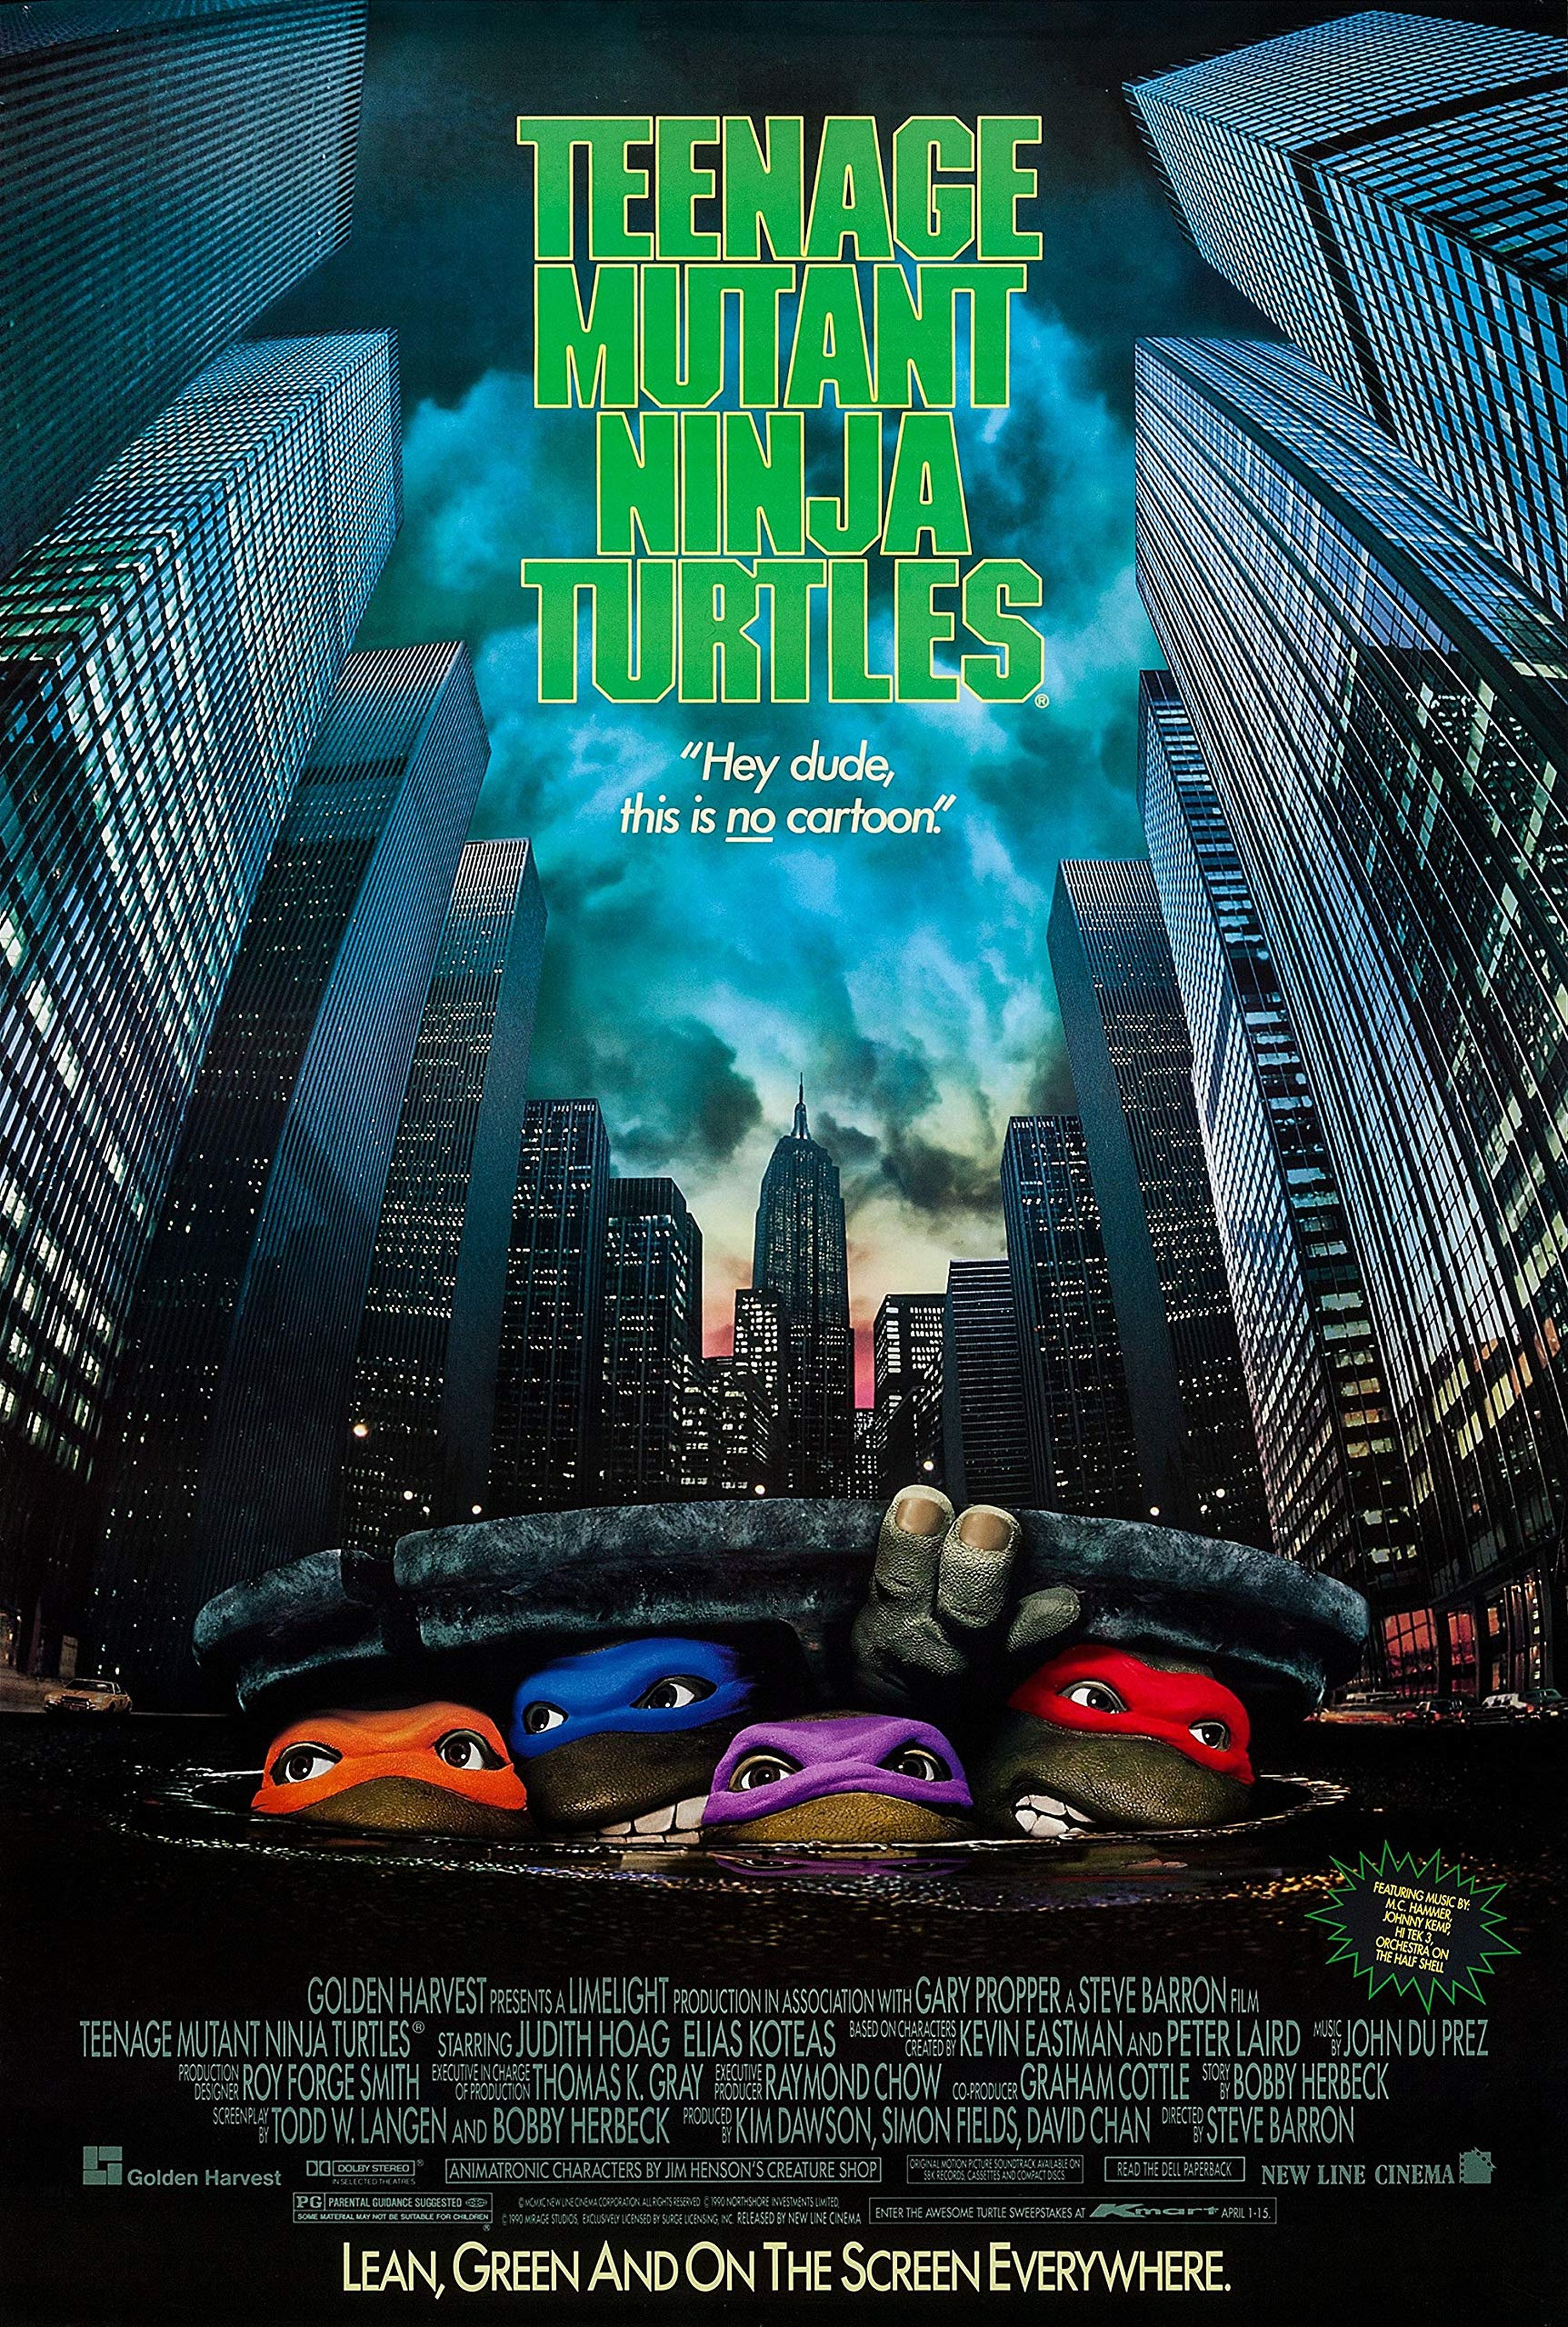 La televisión en abierto celebra el Día del Orgullo Friki regalándote clásicos del cine de los 80 y 90 como Cazafantasmas o Tortugas Ninja